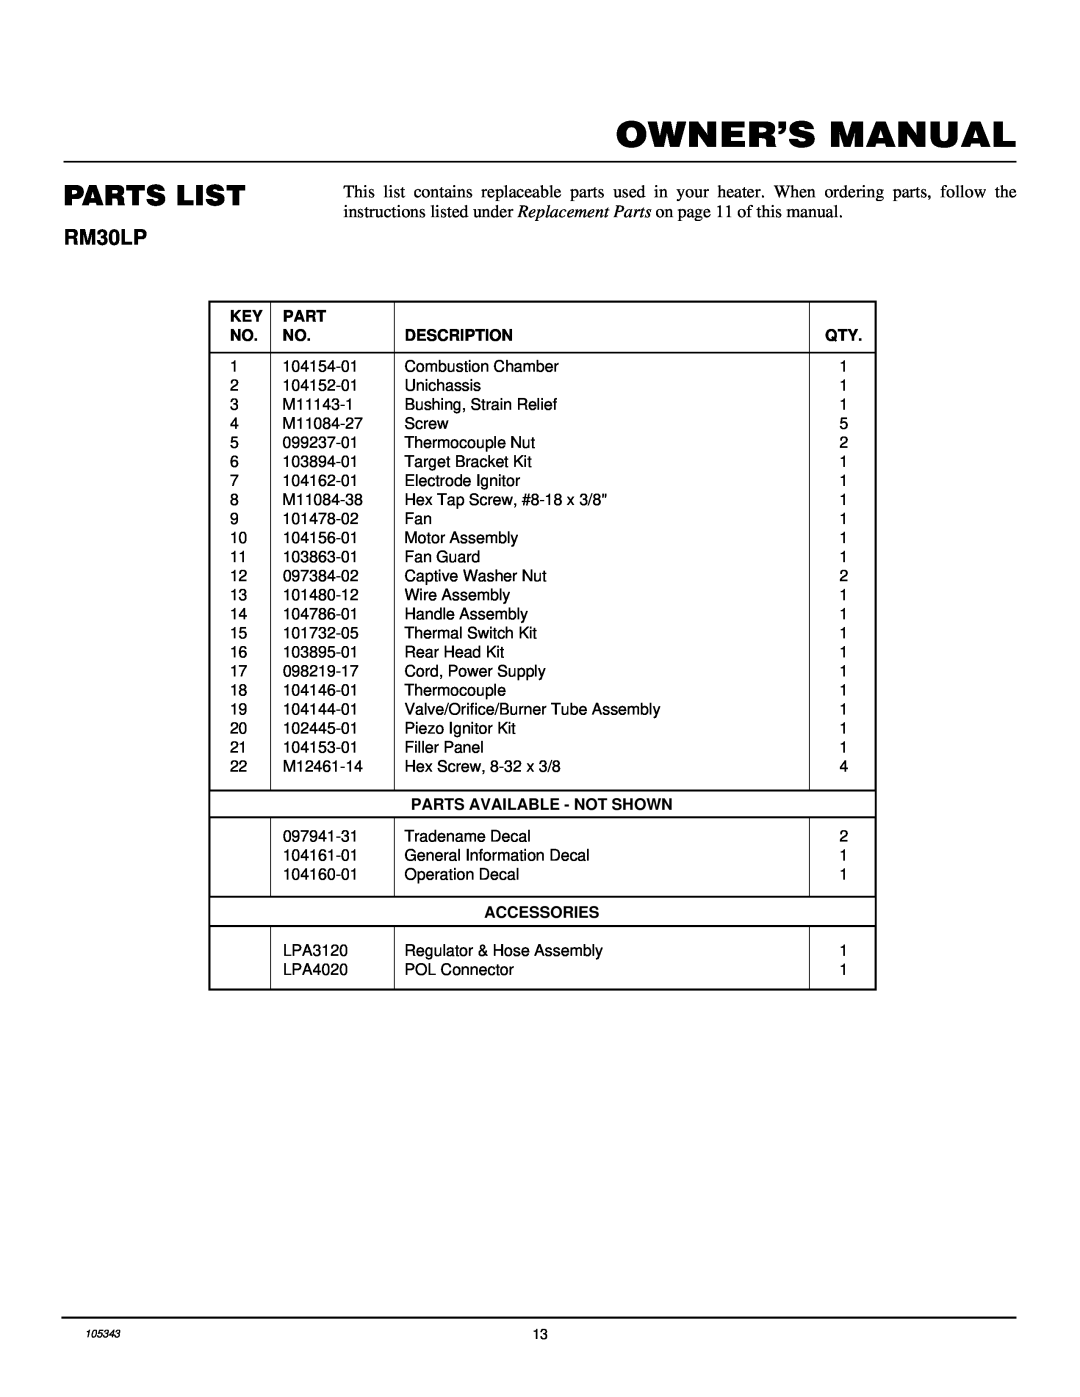 Desa RM30LP owner manual Parts List, Description, Parts Available - Not Shown, Accessories 